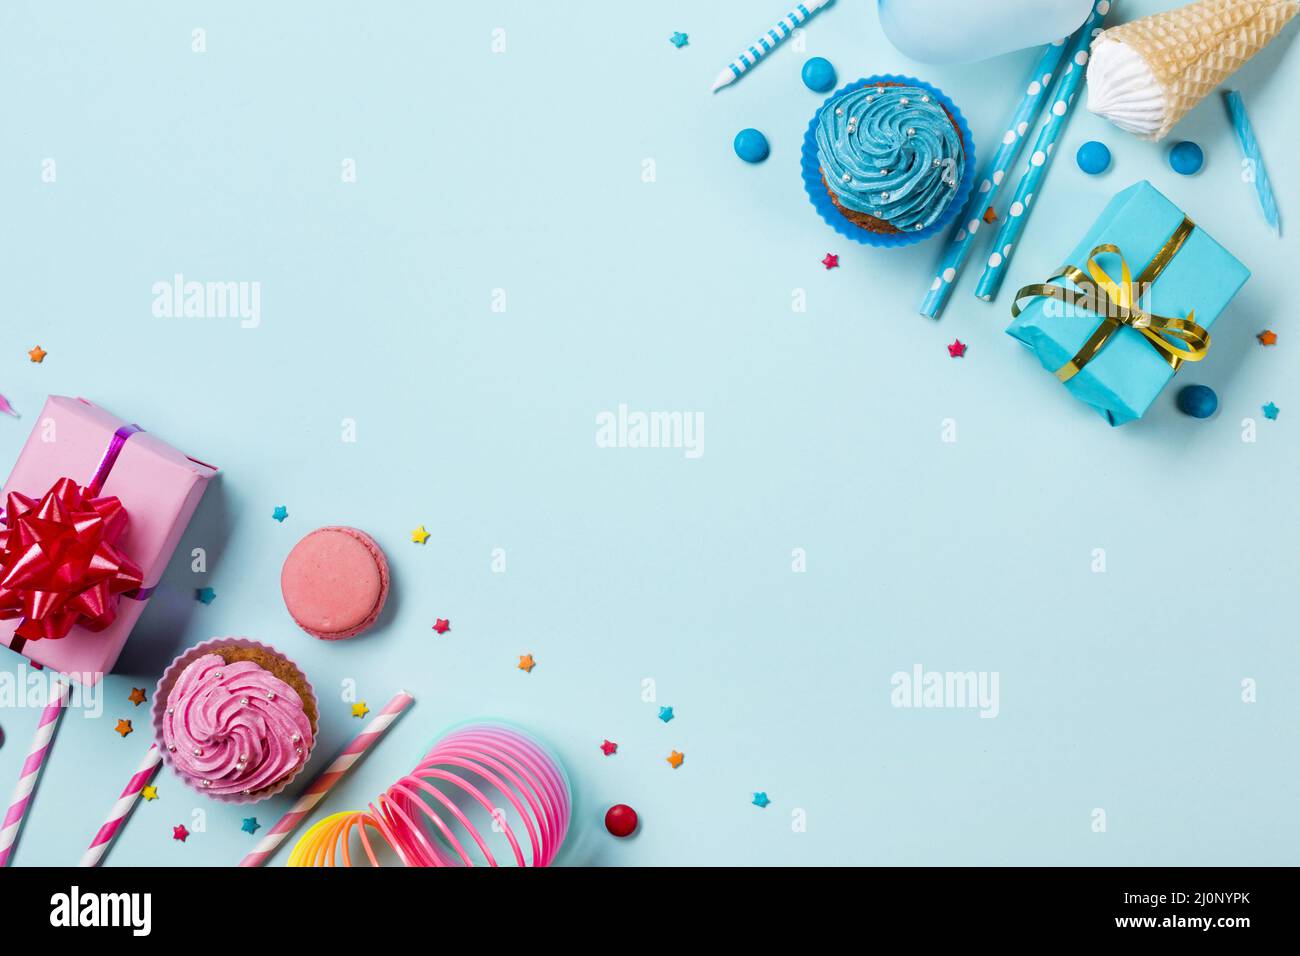 Rosa blau gefärbte Party-Artikel mit Süßwaren farbigen Hintergrund. Hohe Qualität und Auflösung schönes Fotokonzept Stockfoto